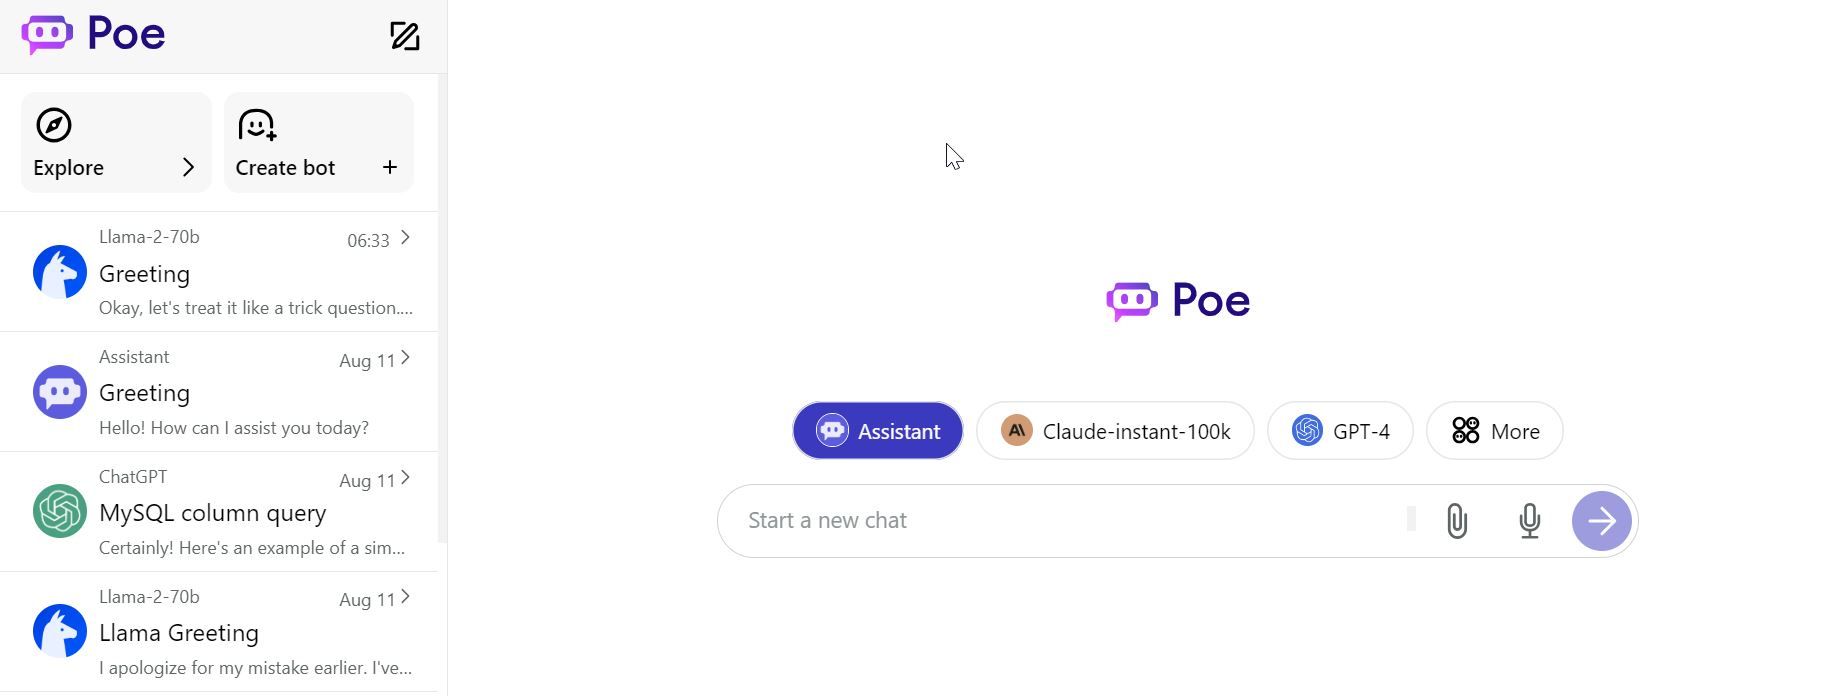 Interface de bate-papo Poe.com